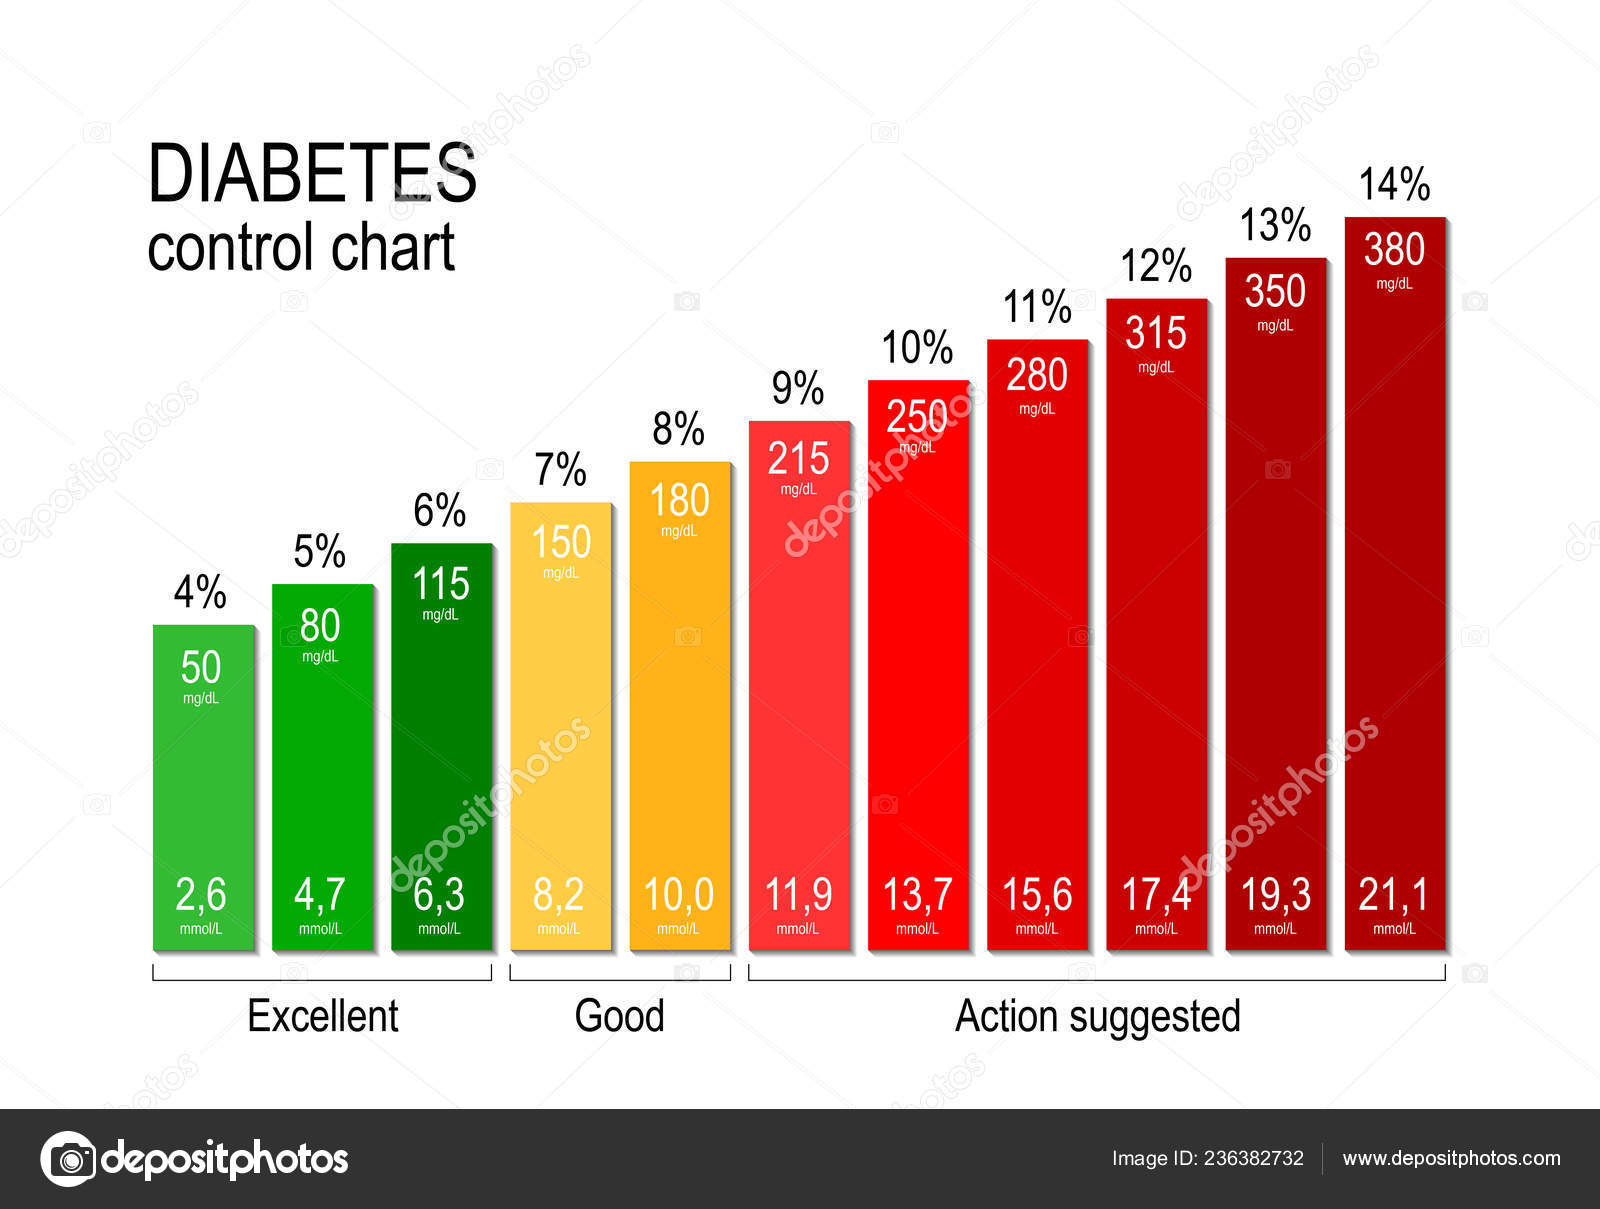 Sugar Level Chart For Diabetic Patient